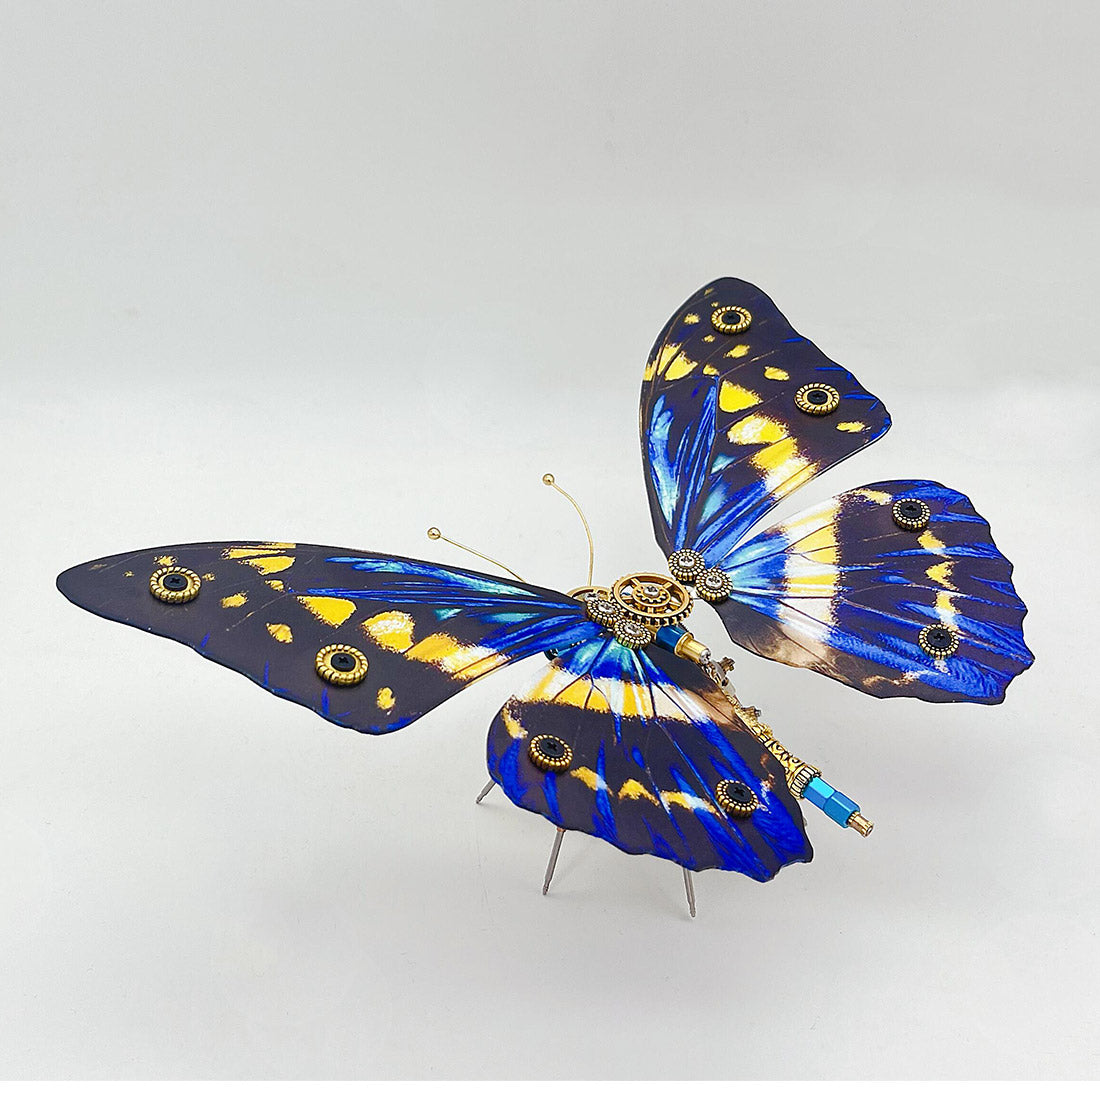 Butterfly Dragonfly Art Kit for Kids DIY Craft Kit Art 